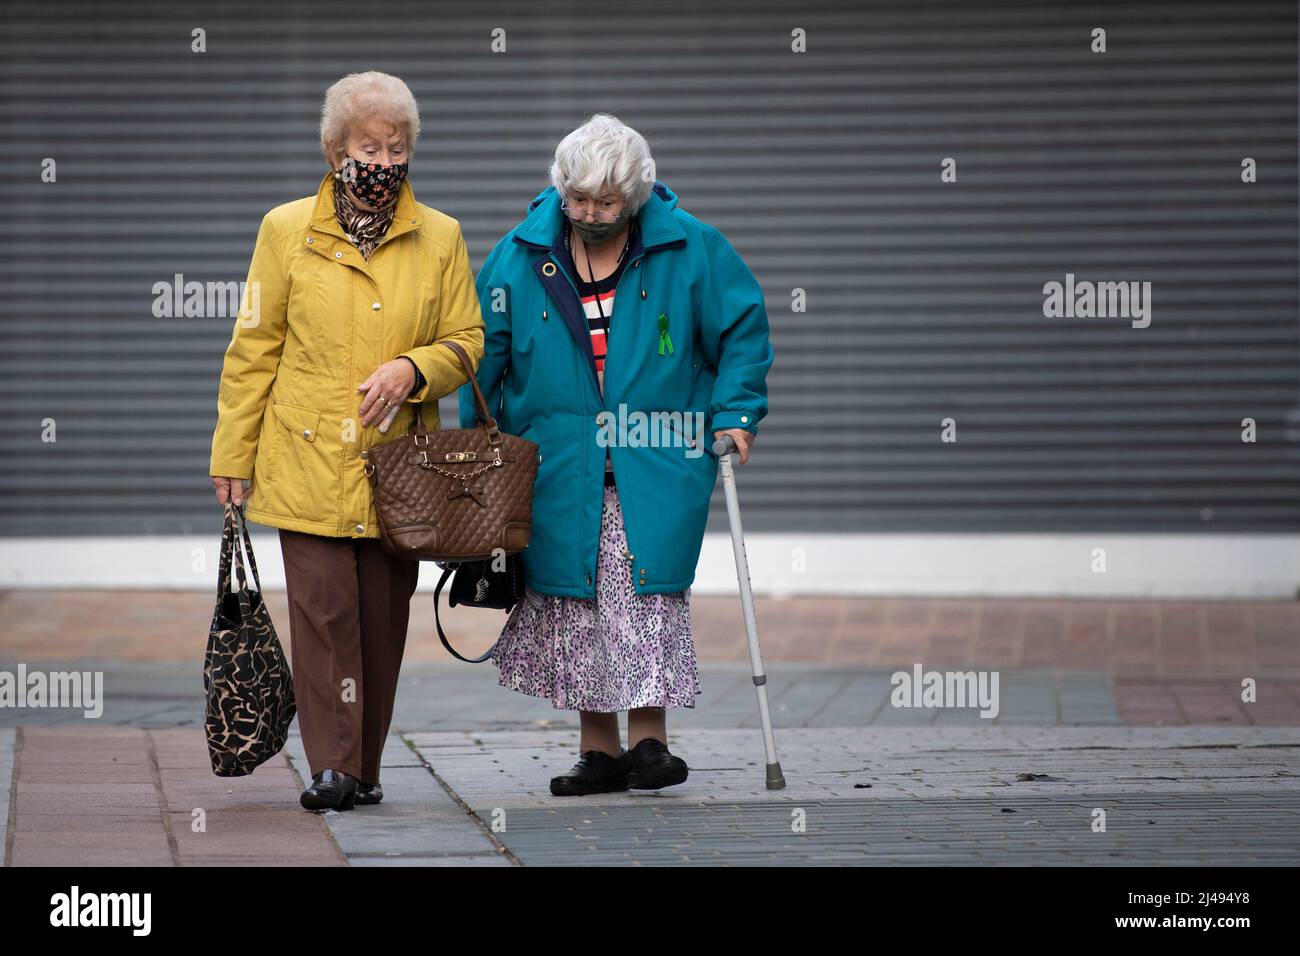 MERTHYR TYDFIL, GALES - 07 DE NOVIEMBRE: Dos mujeres usan máscaras faciales mientras caminan por el centro de la ciudad el 07 de noviembre de 2020 en Merthyr Tydfil, Gales. El Foto de stock